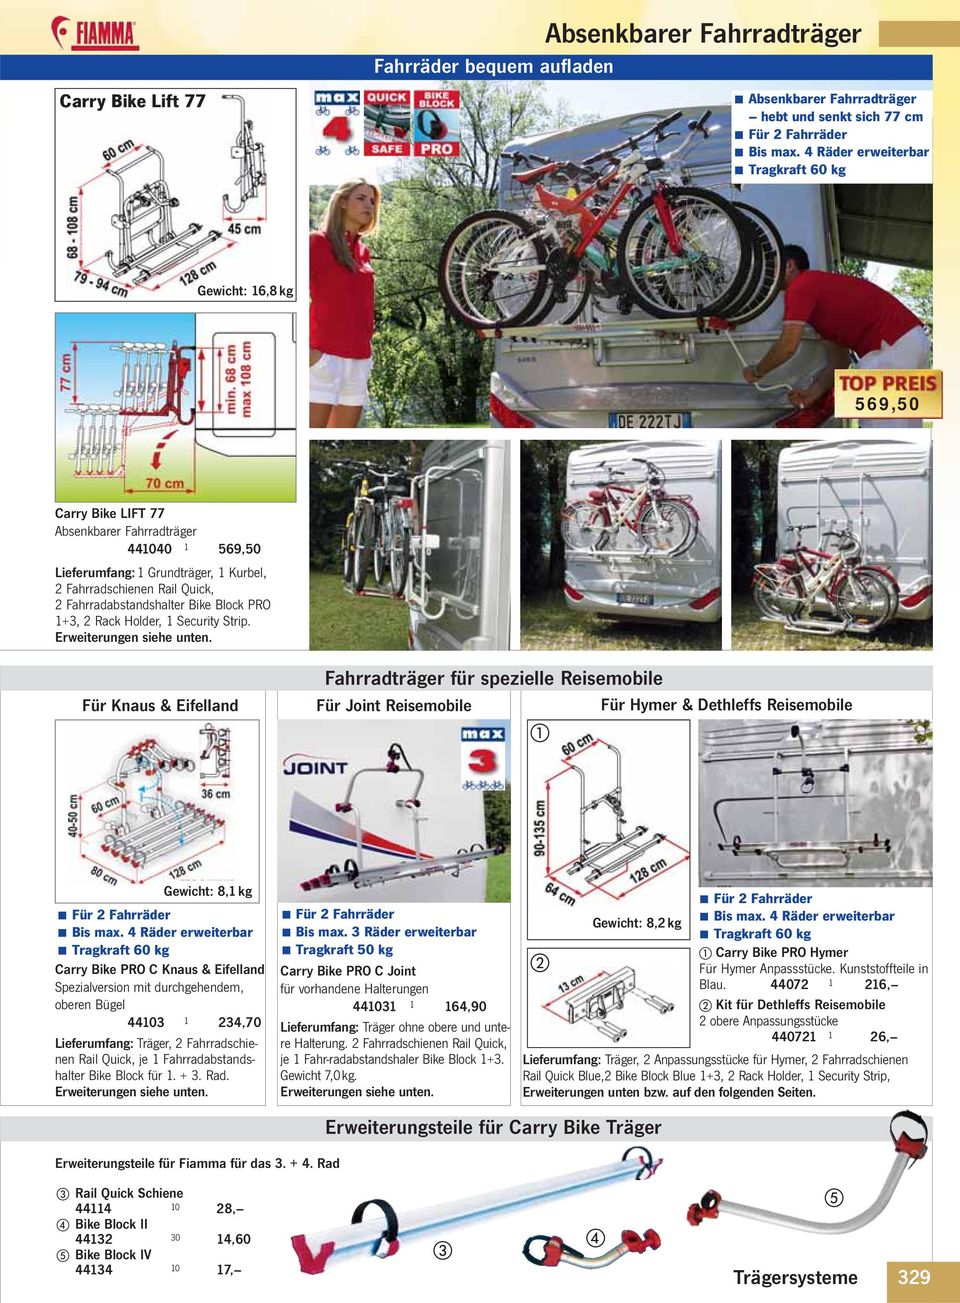 Für Knaus & Eifelland Fahrradträger für spezielle Reisemobile Für Joint Reisemobile Für Hymer & Dethleffs Reisemobile Gewicht: 8,1 kg Carry Bike PRO C Knaus & Eifelland Spezialversion mit